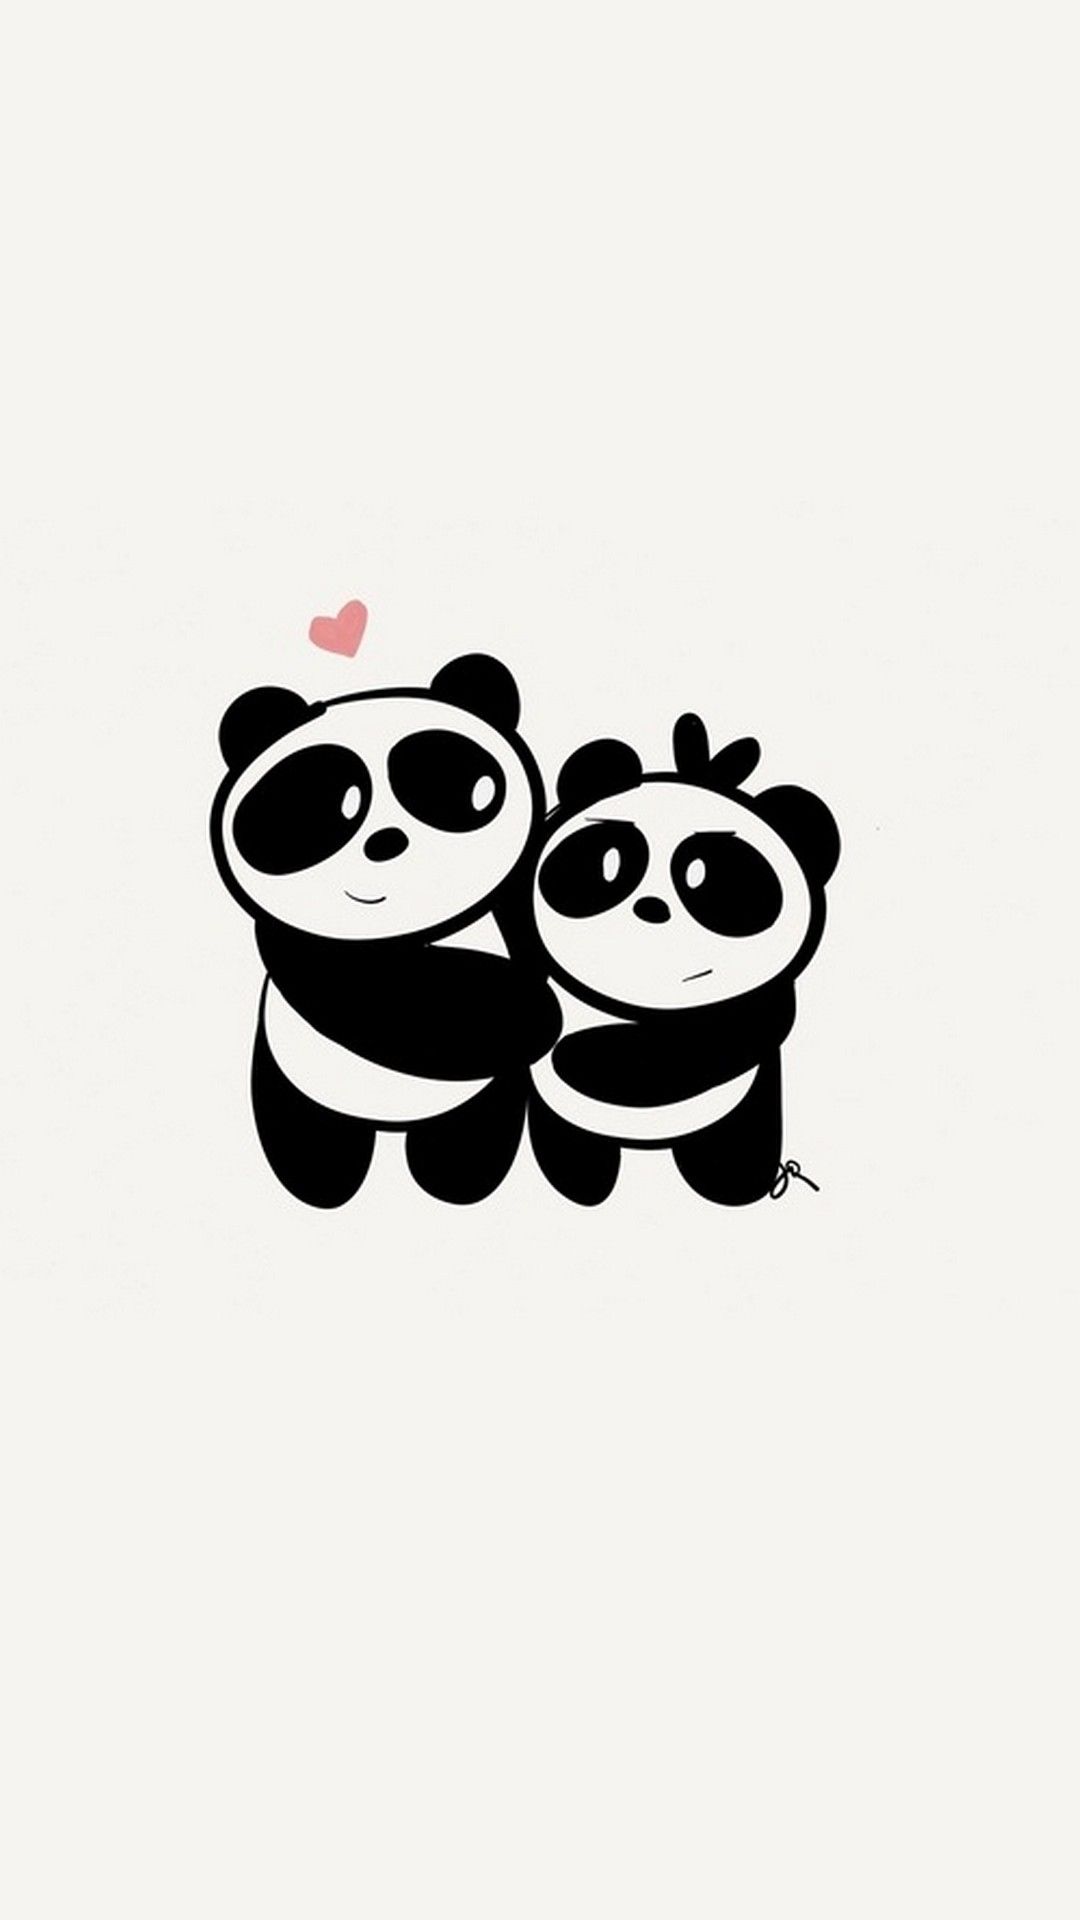 iPhone X Cute Couple Panda Wallpaper Best